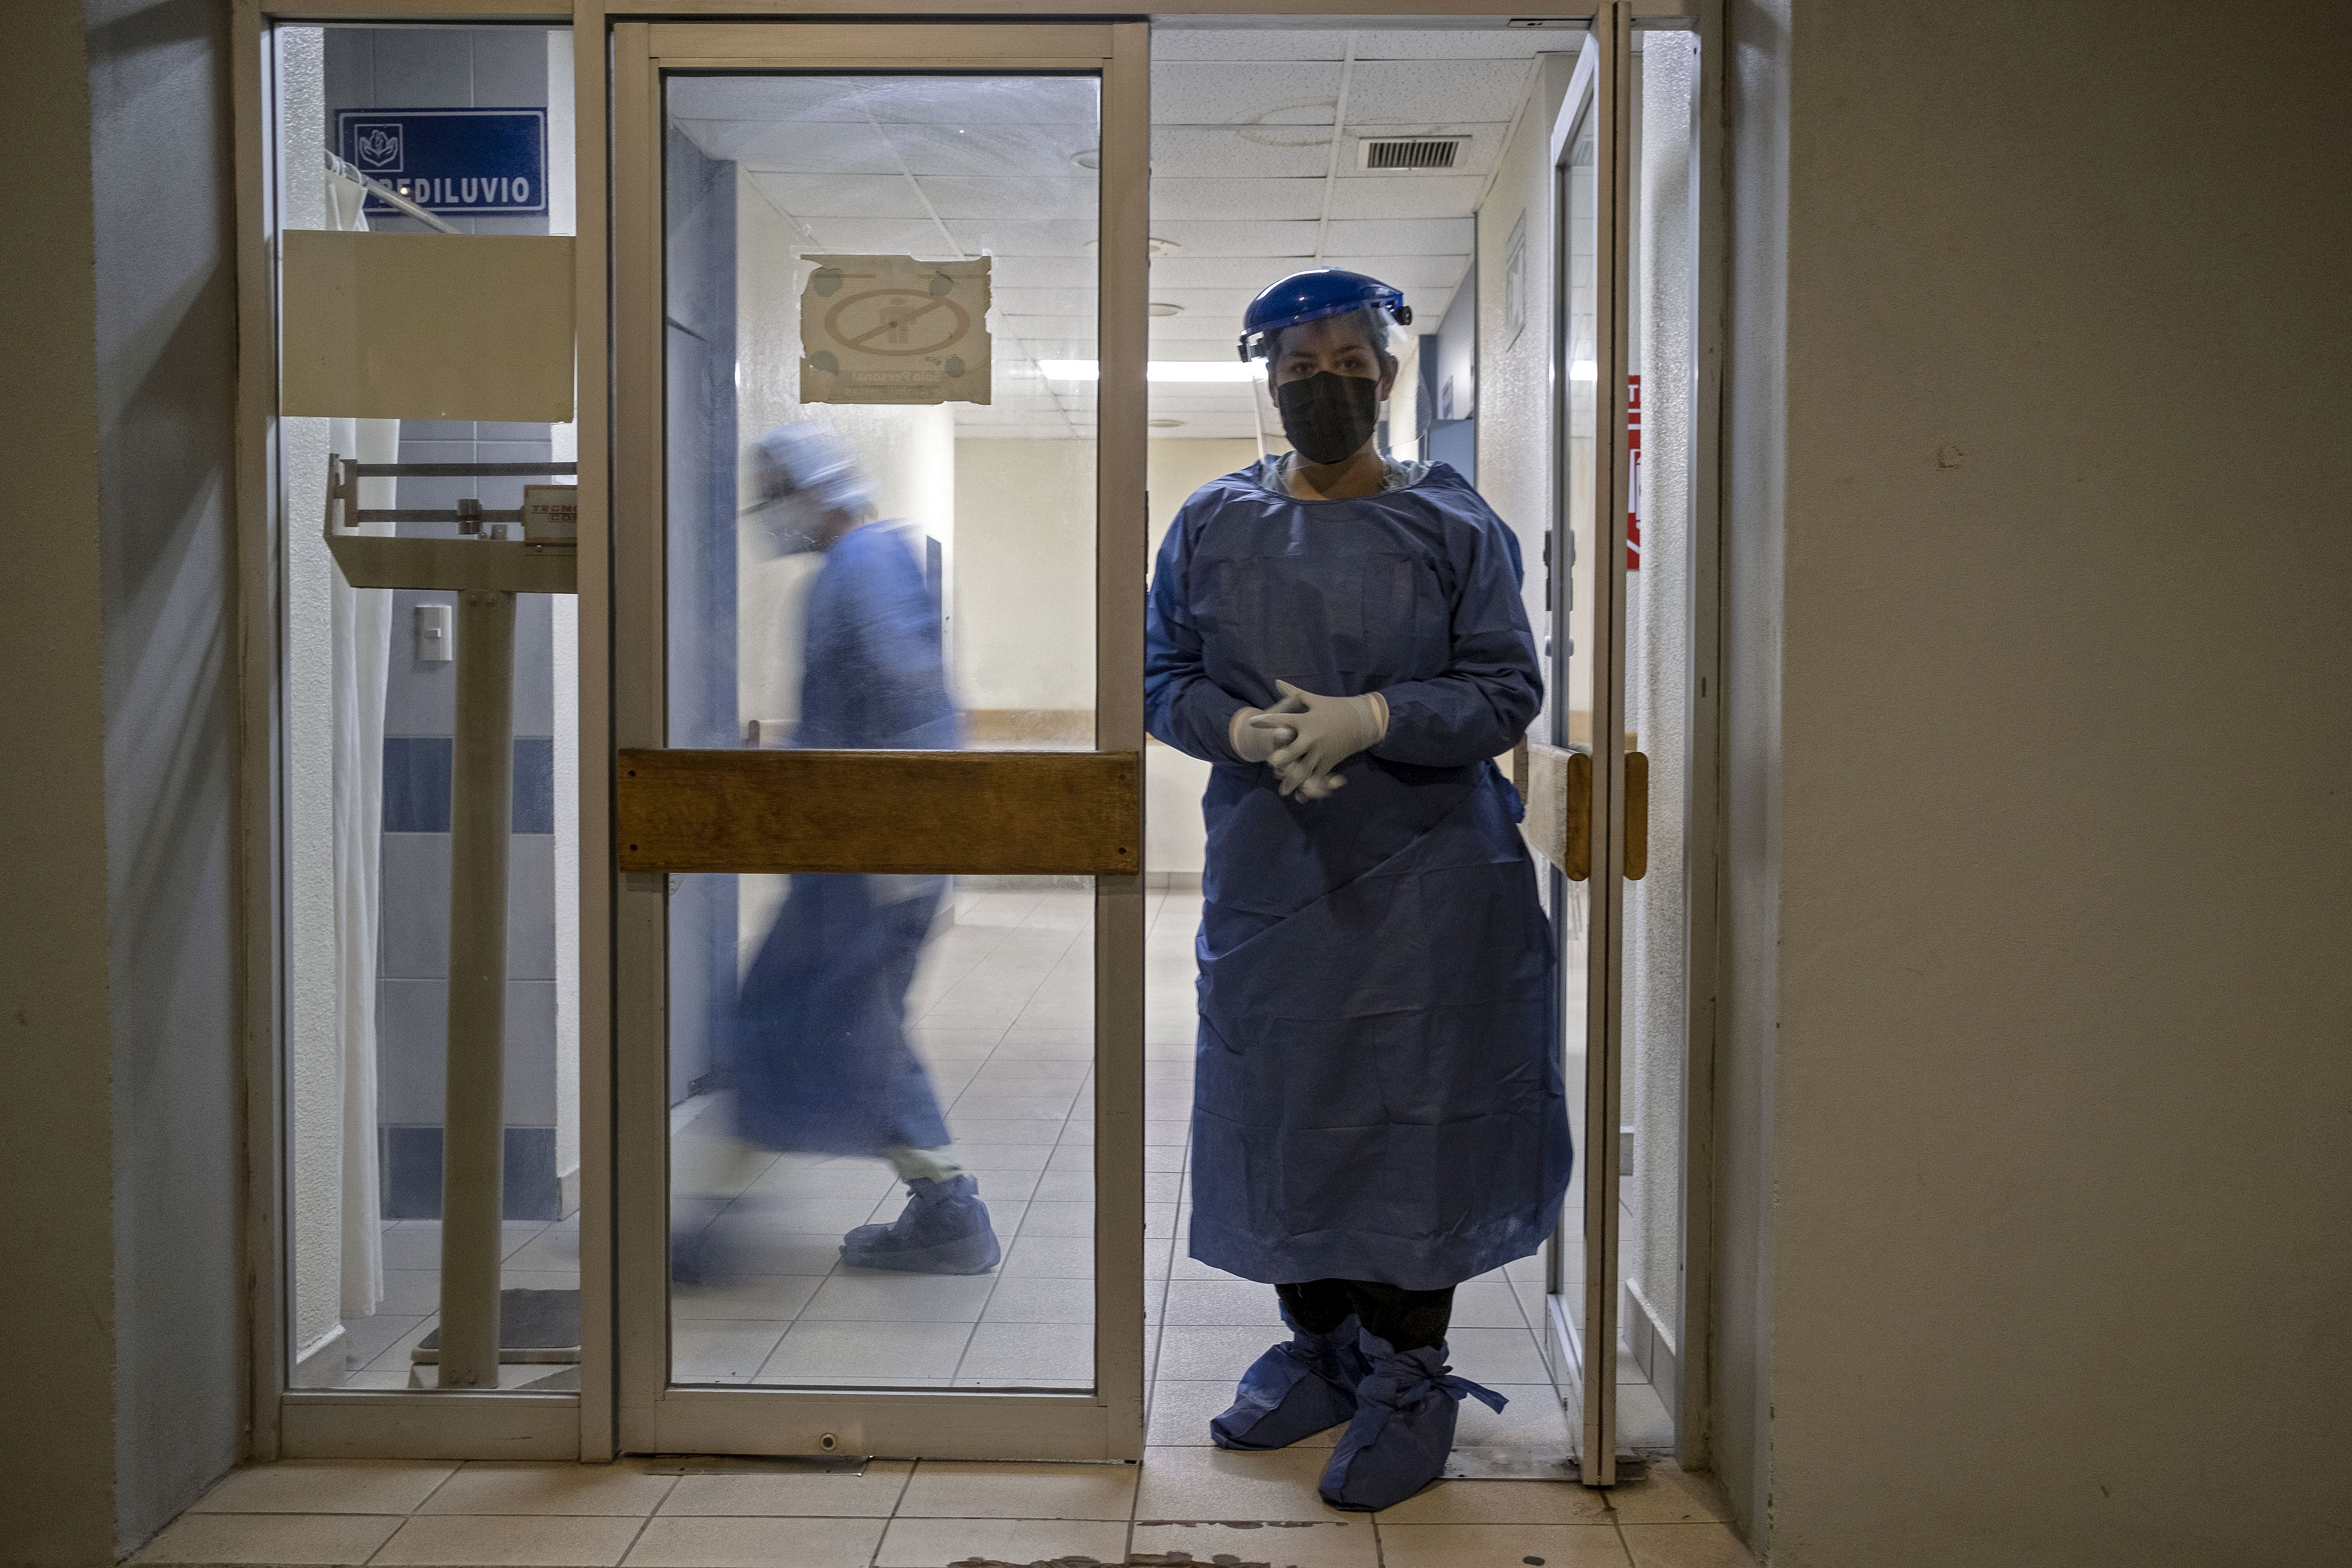 Cerca de 500 médicos llegarían a México desde Cuba
(Foto: Guillermo Arias / AFP)